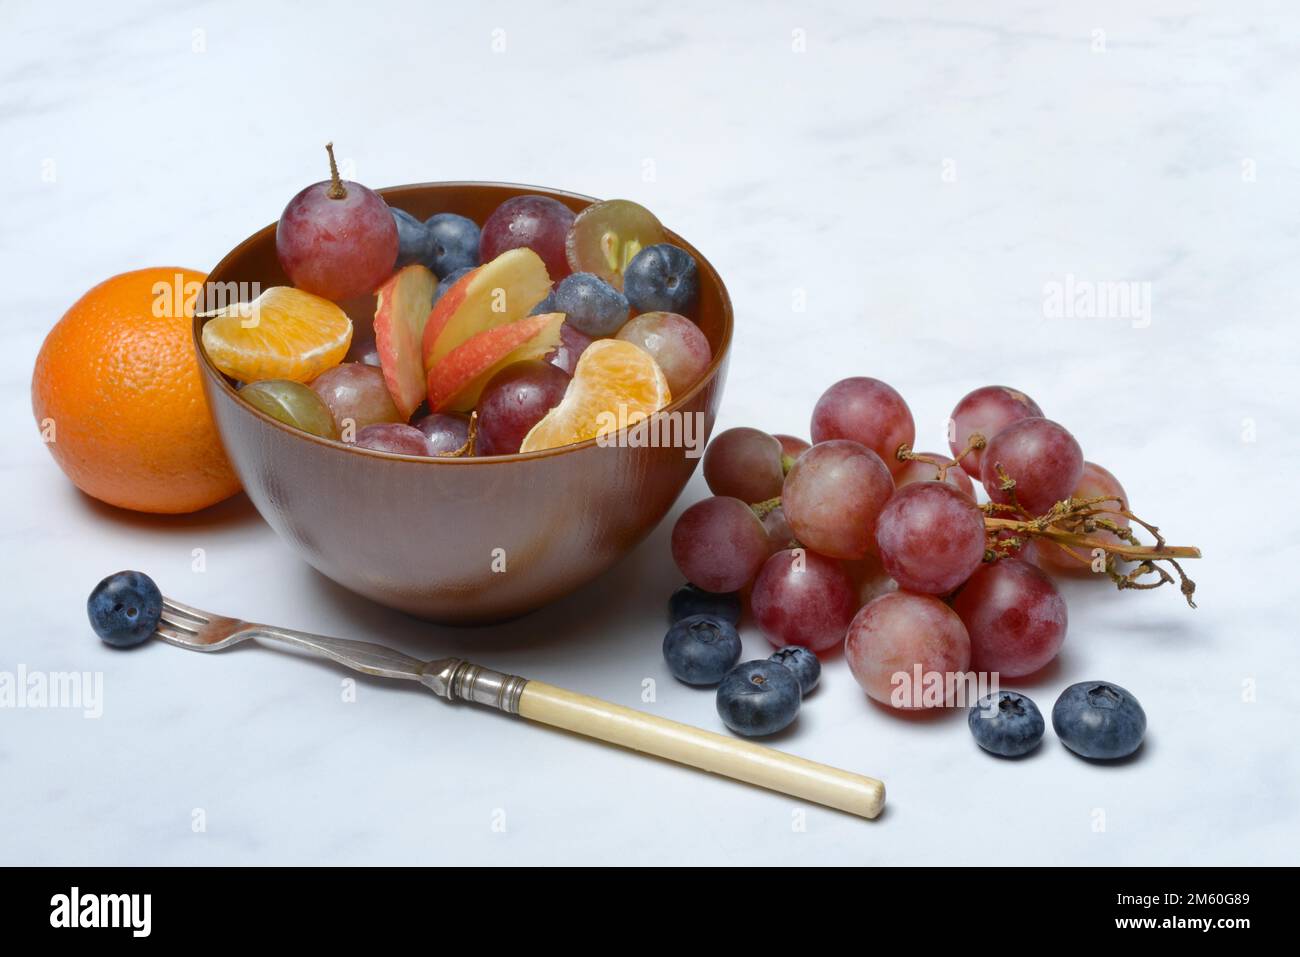 Vari pezzi di frutta in ciotola, Macedonia di frutta Foto Stock